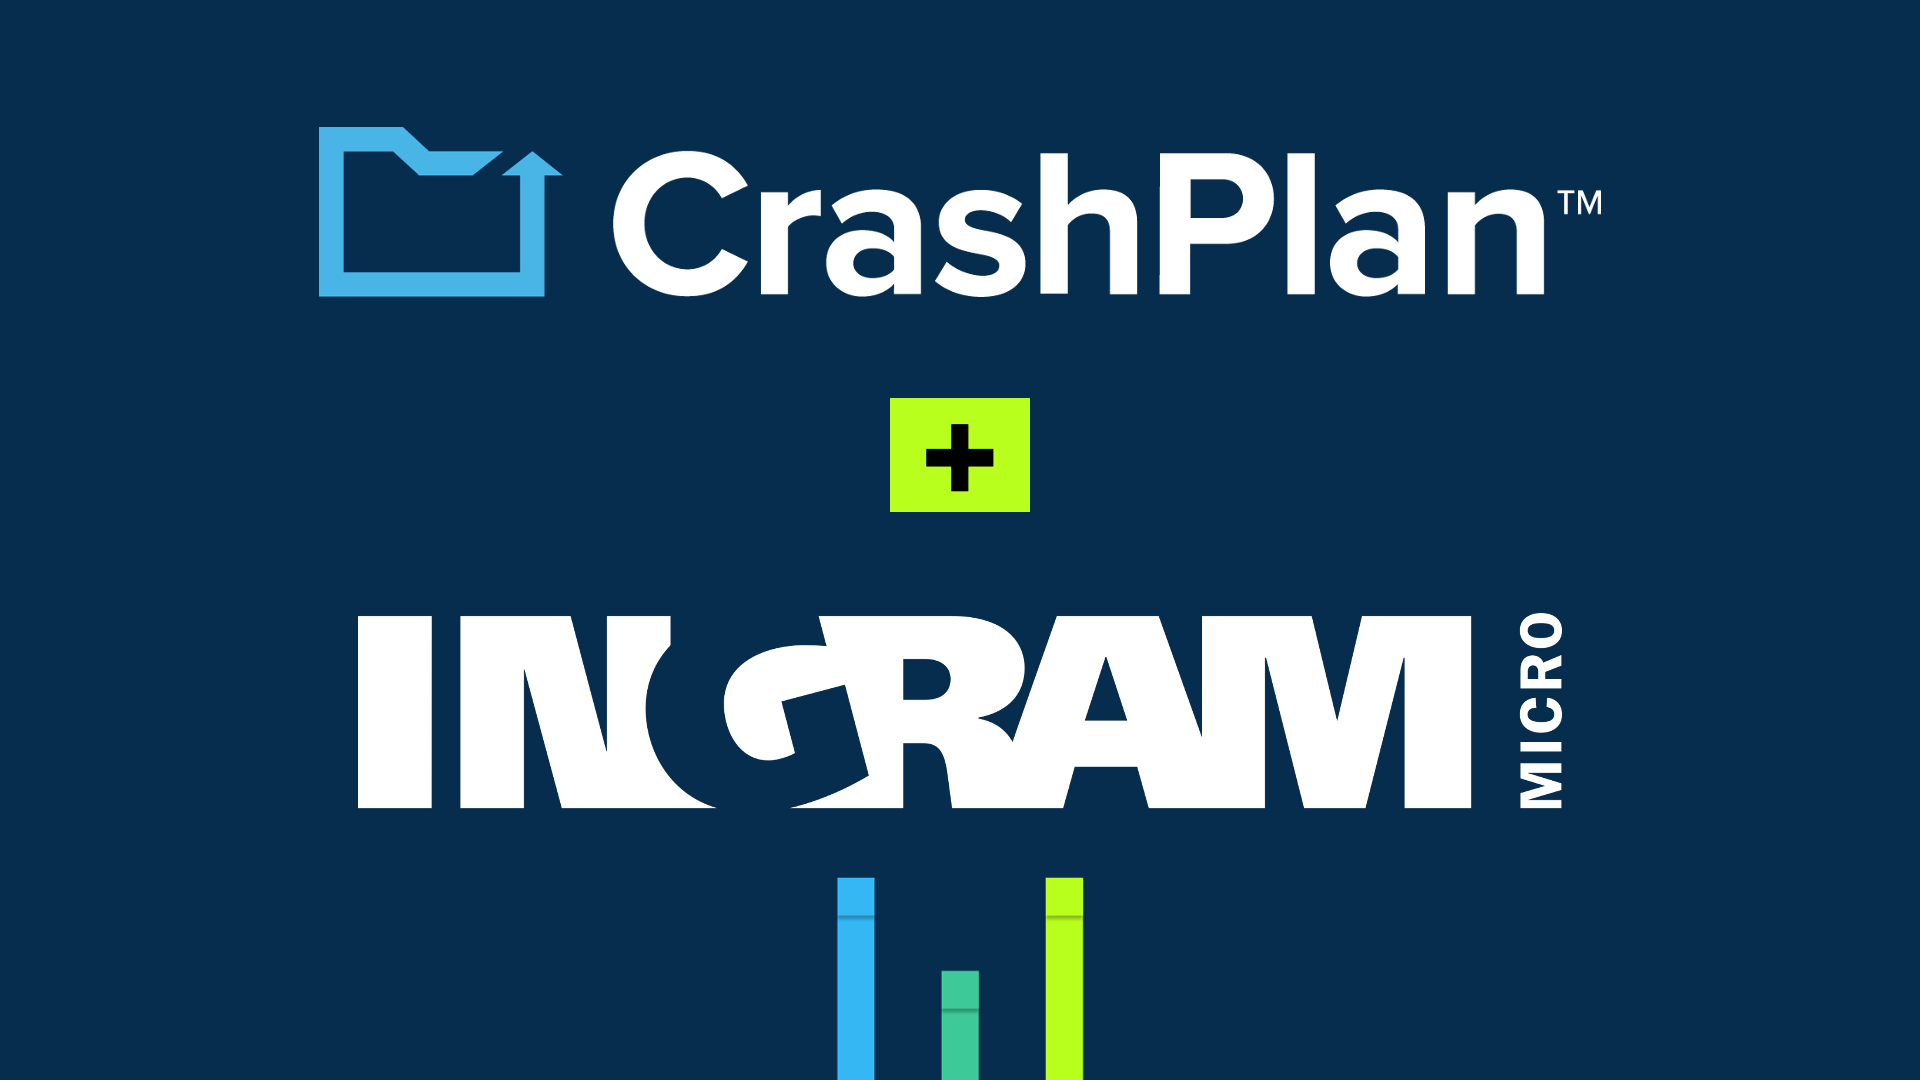 CrashPlan + Ingram Micro logos